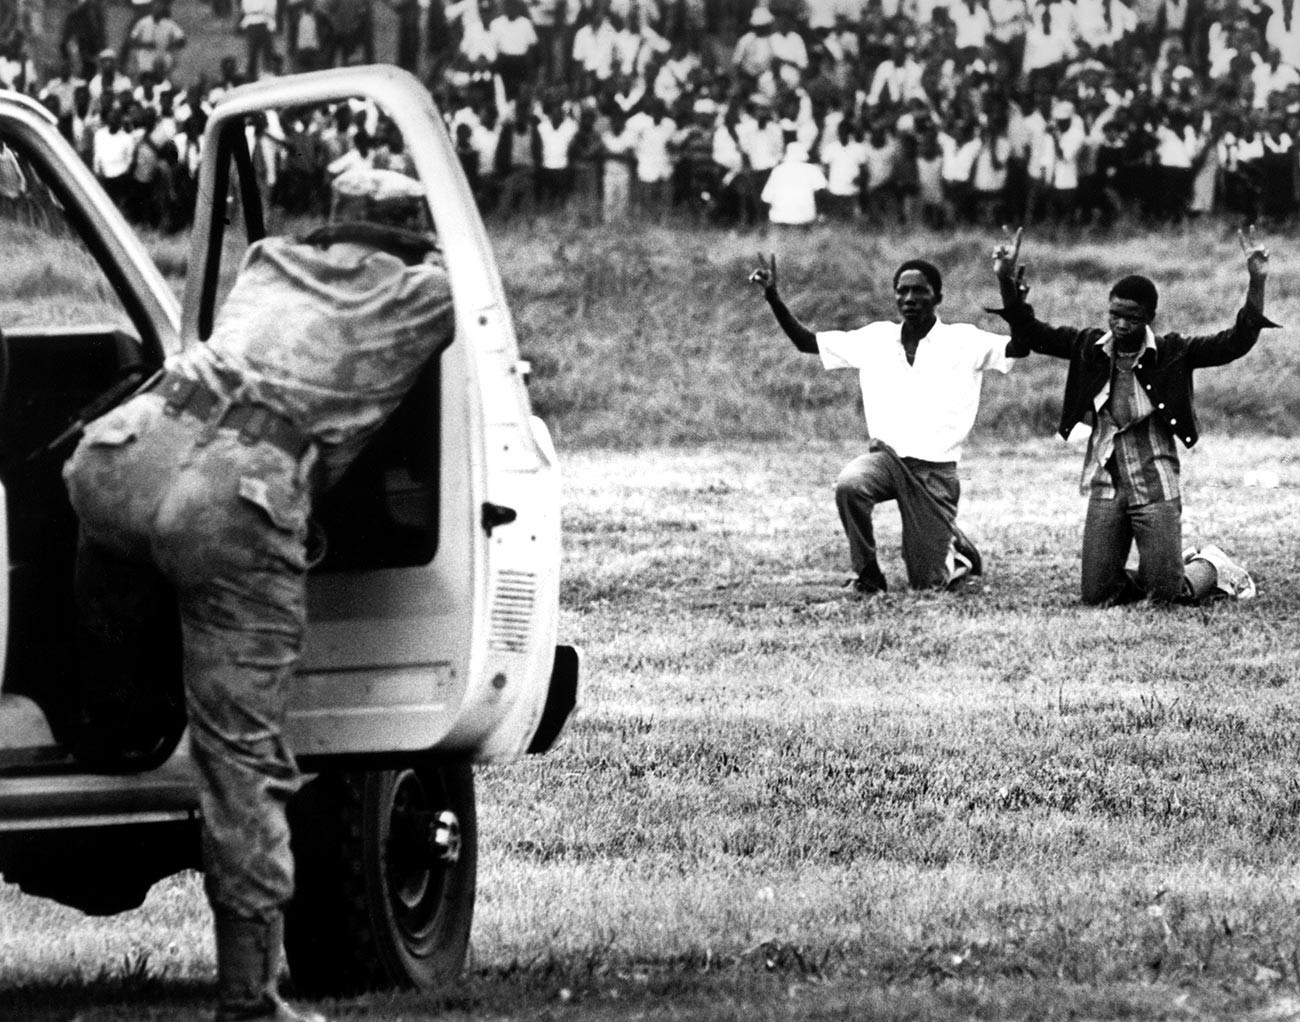 Jovens da cidade de Soweto ajoelhados em frente à polícia com as mãos para o alto mostrando o símbolo da paz, em junho de 1976